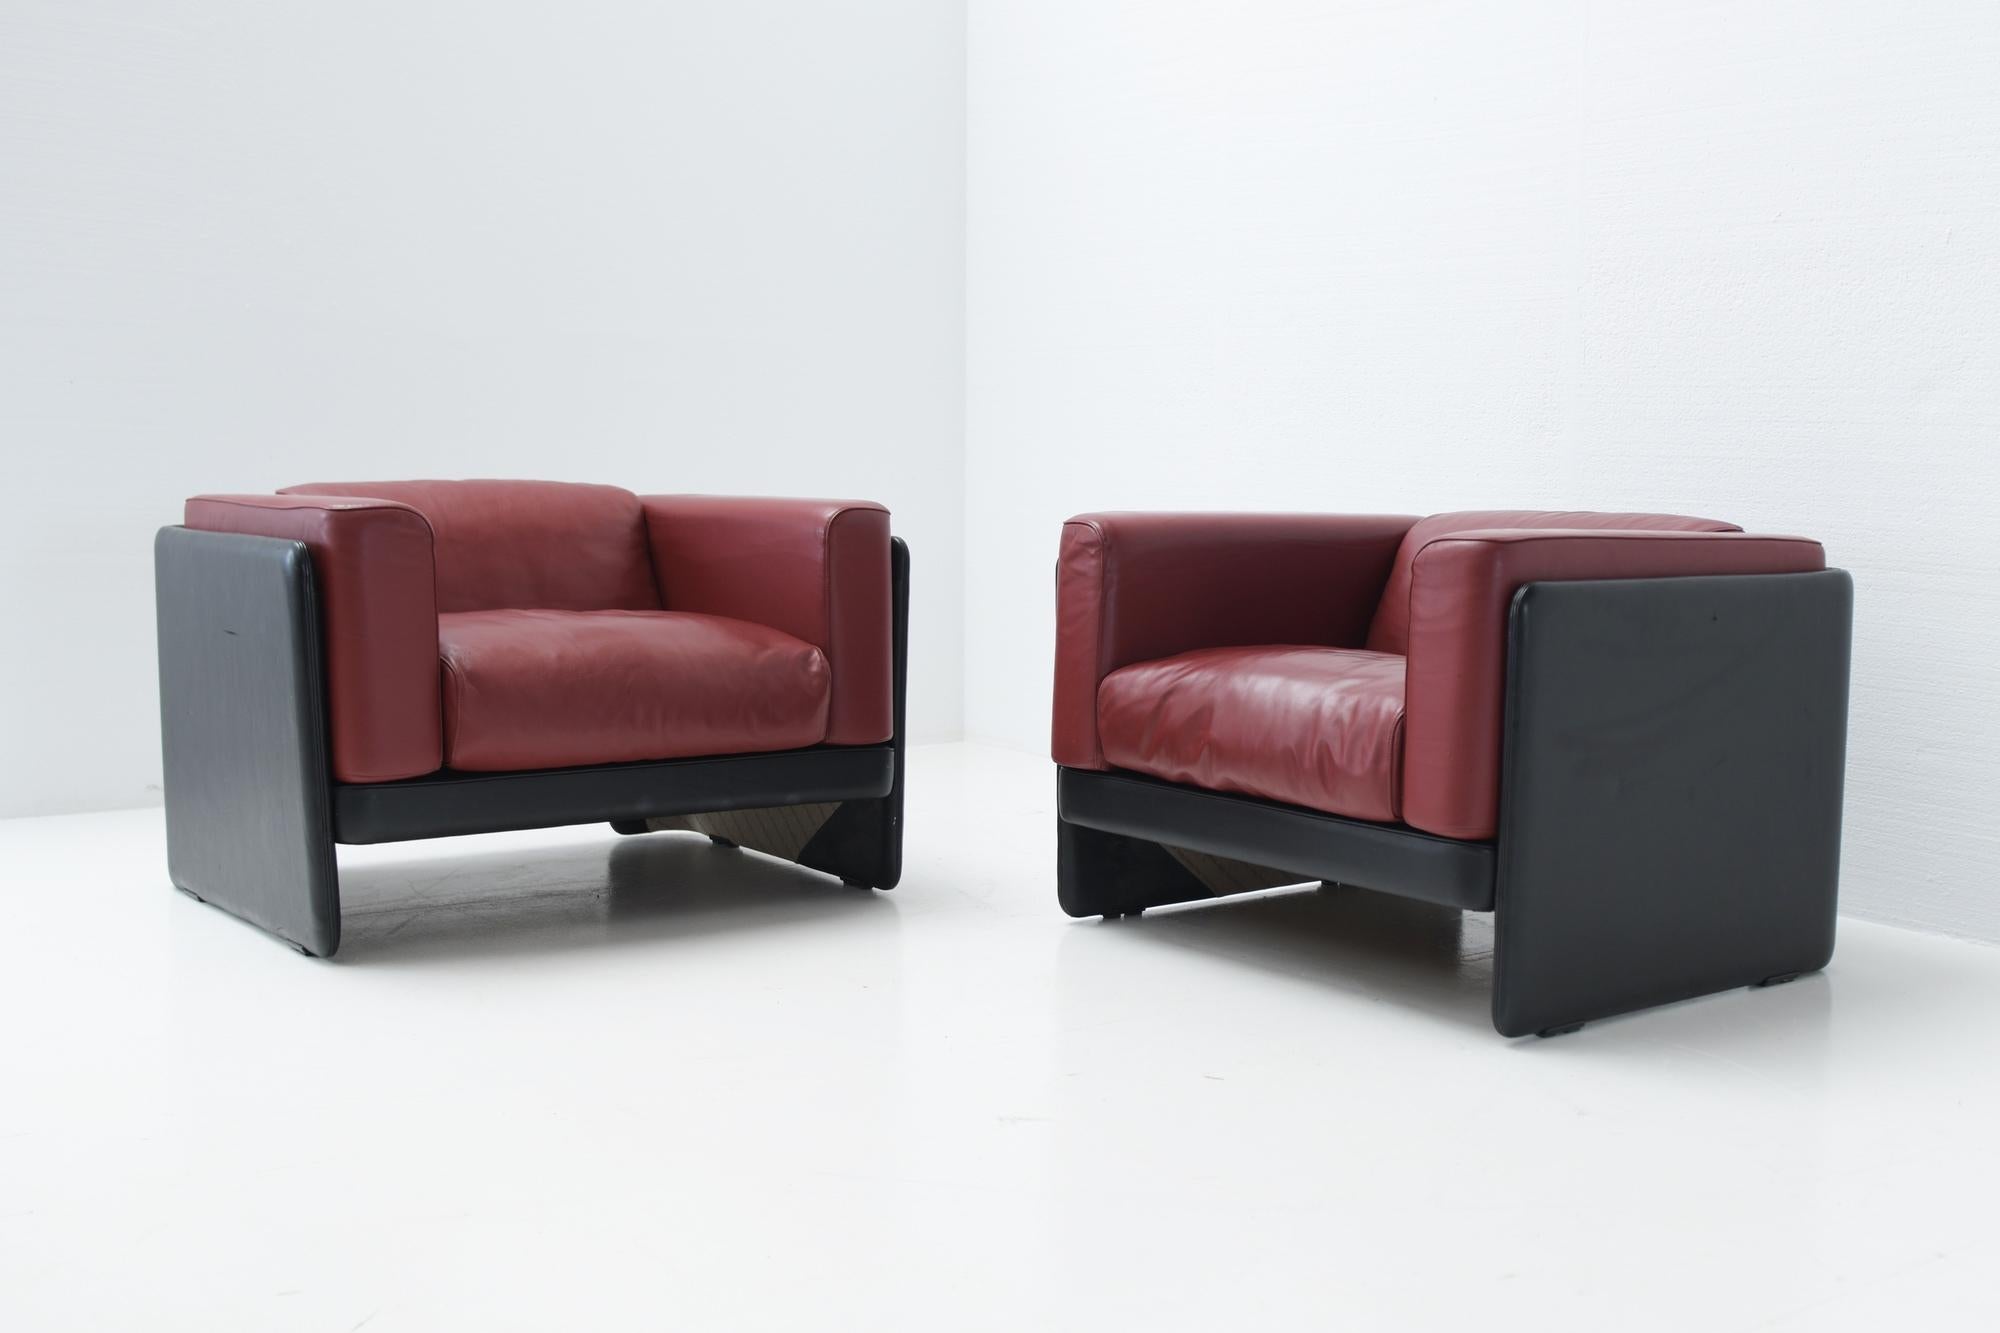 Italian La Capanelle Leather Leasure Chairs by Tito Agnoli for Poltrona Frau